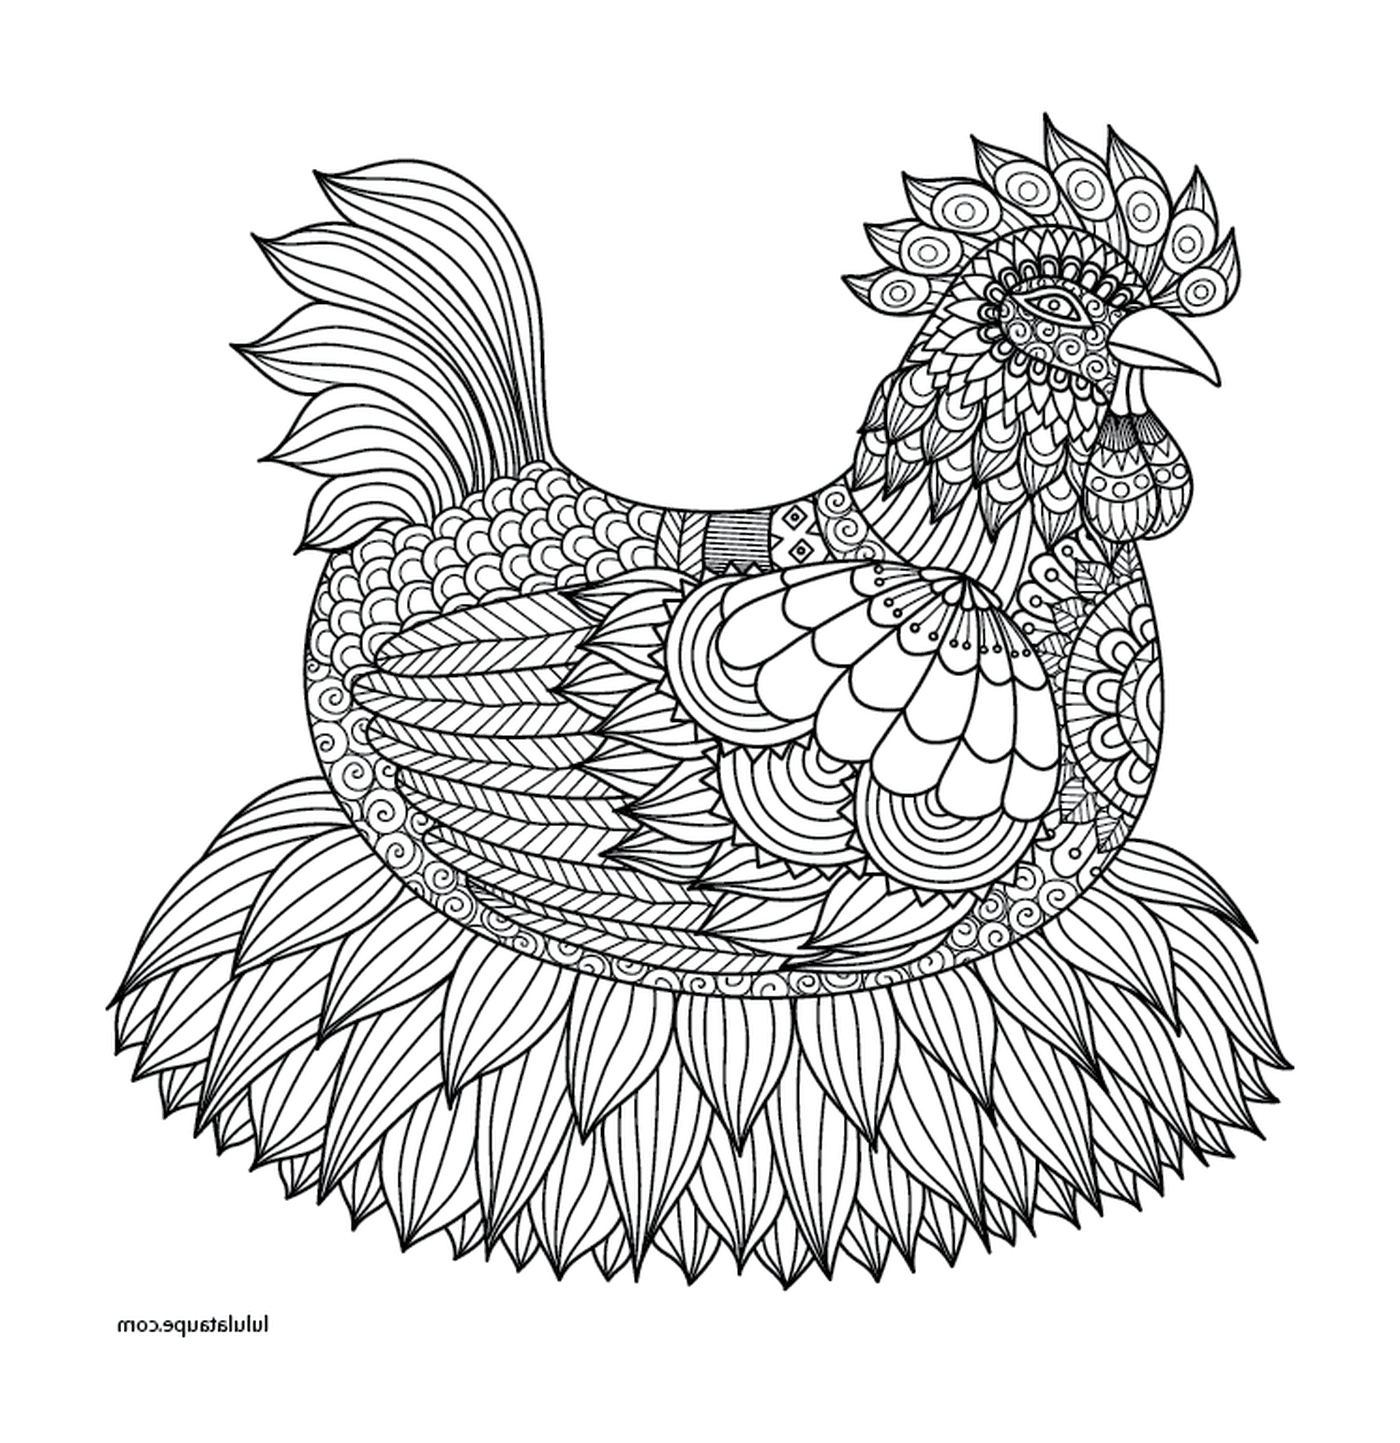  Elegant gestaltetes erwachsenes Huhn 